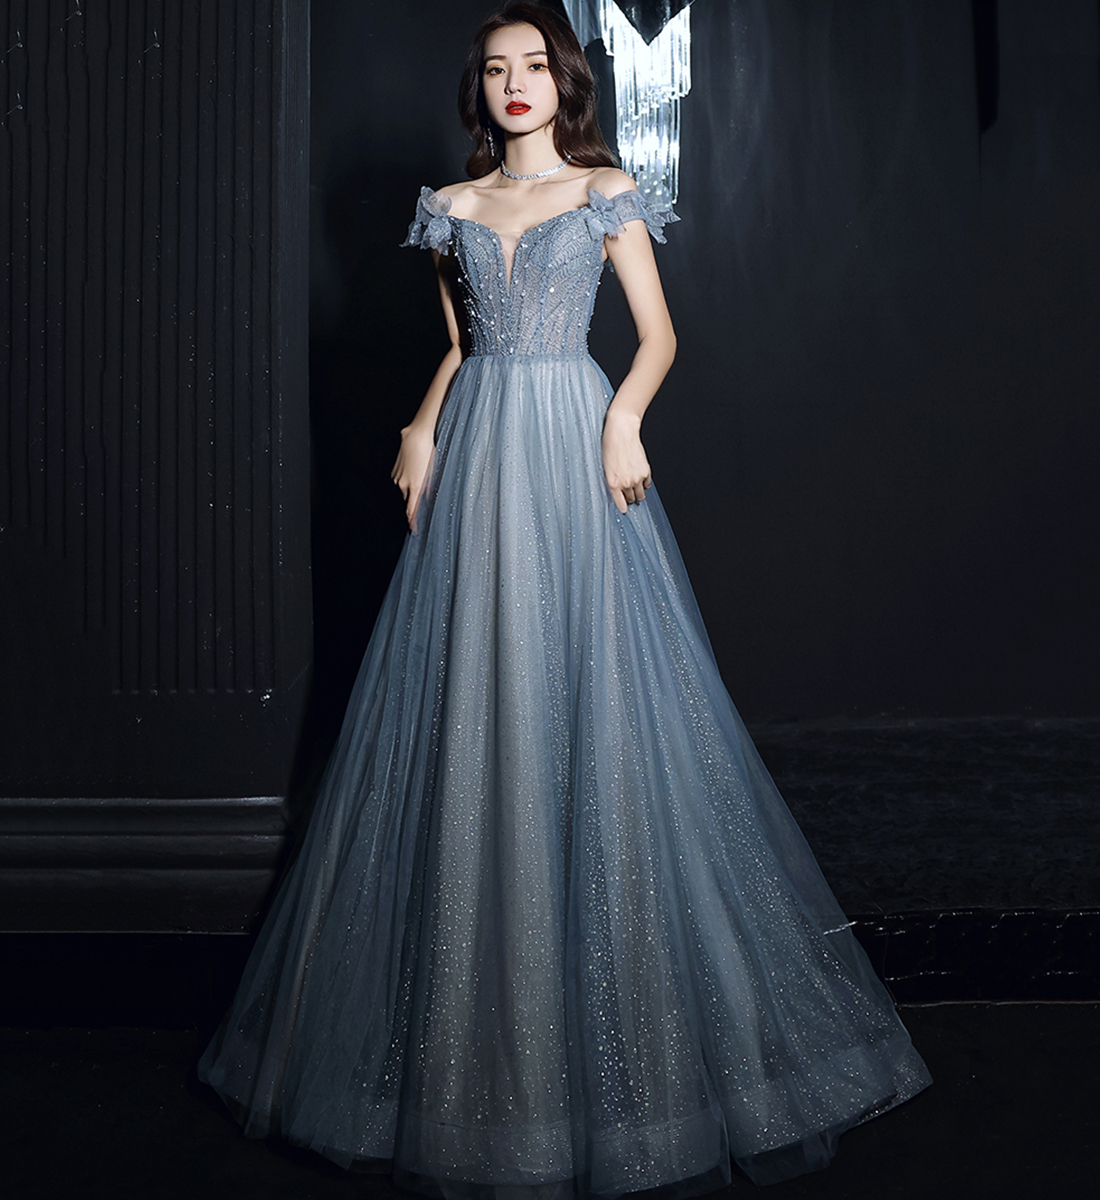 Elegant Tulle Sequins Long Prom Dress Blue Evening Dress,pl3750